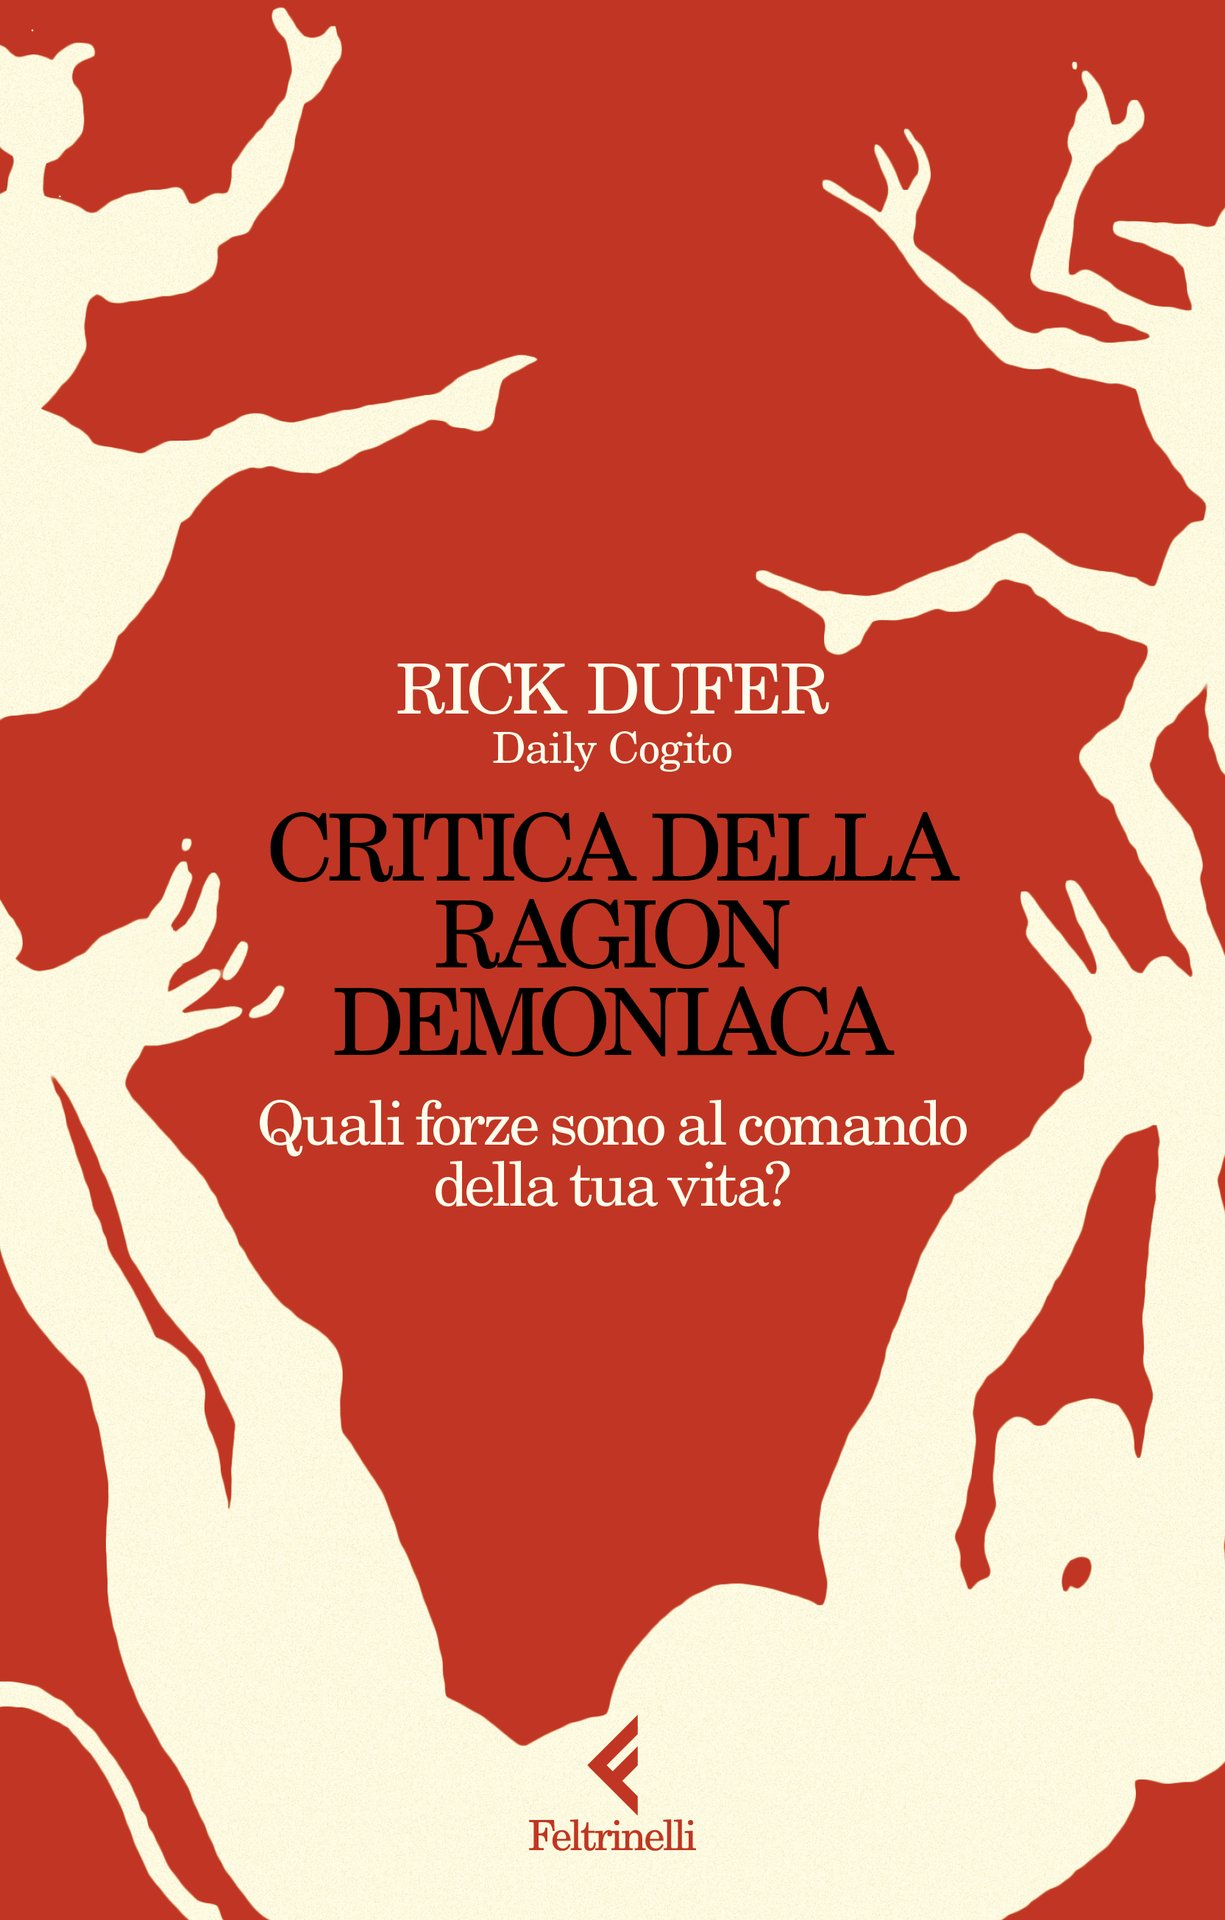 Rick DuFer presenta "Critica della ragion demoniaca" alla Feltrinelli alla Feltrinelli Torino